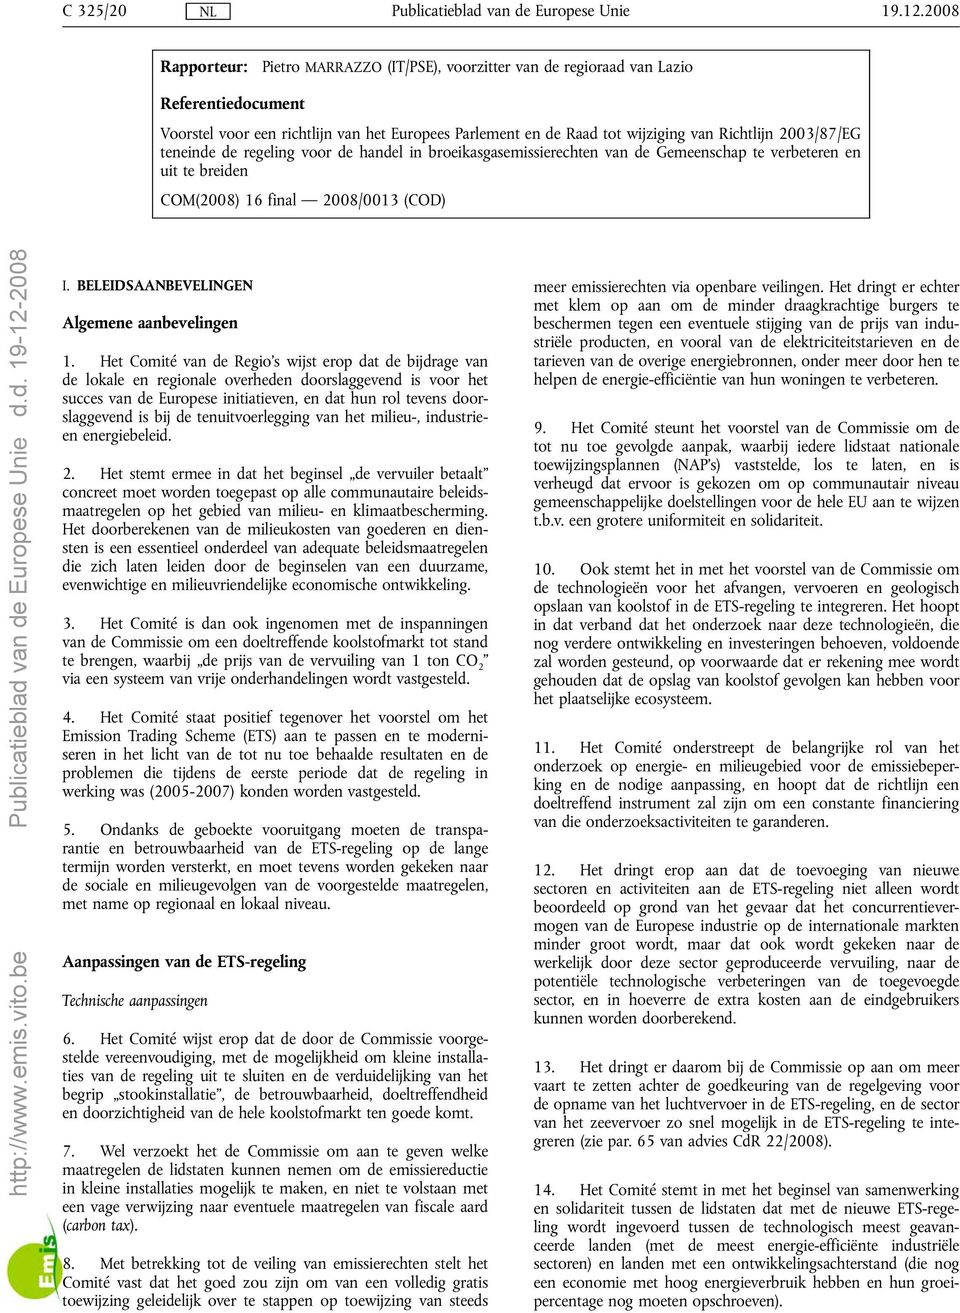 2003/87/EG teneinde de regeling voor de handel in broeikasgasemissierechten van de Gemeenschap te verbeteren en uit te breiden COM(2008) 16 final 2008/0013 (COD) I.